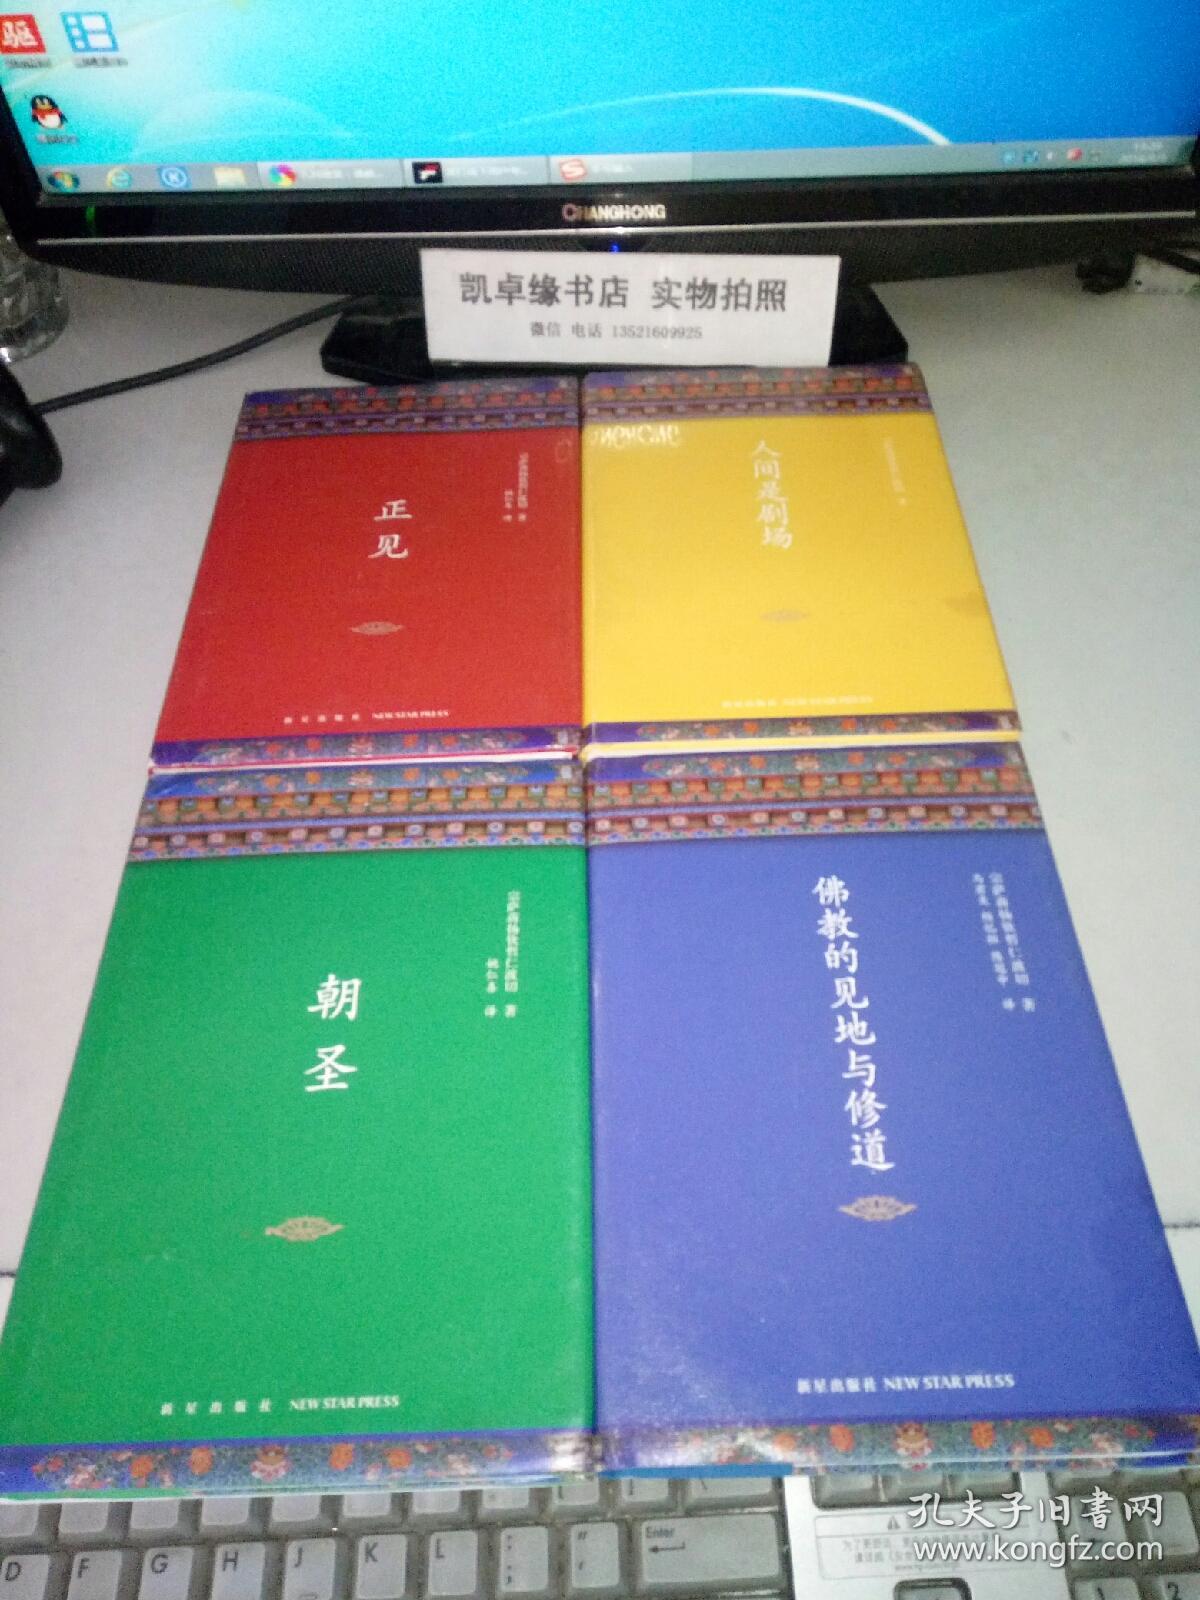 宗萨蒋扬钦哲仁波切文集;正见, 佛教的见地与修